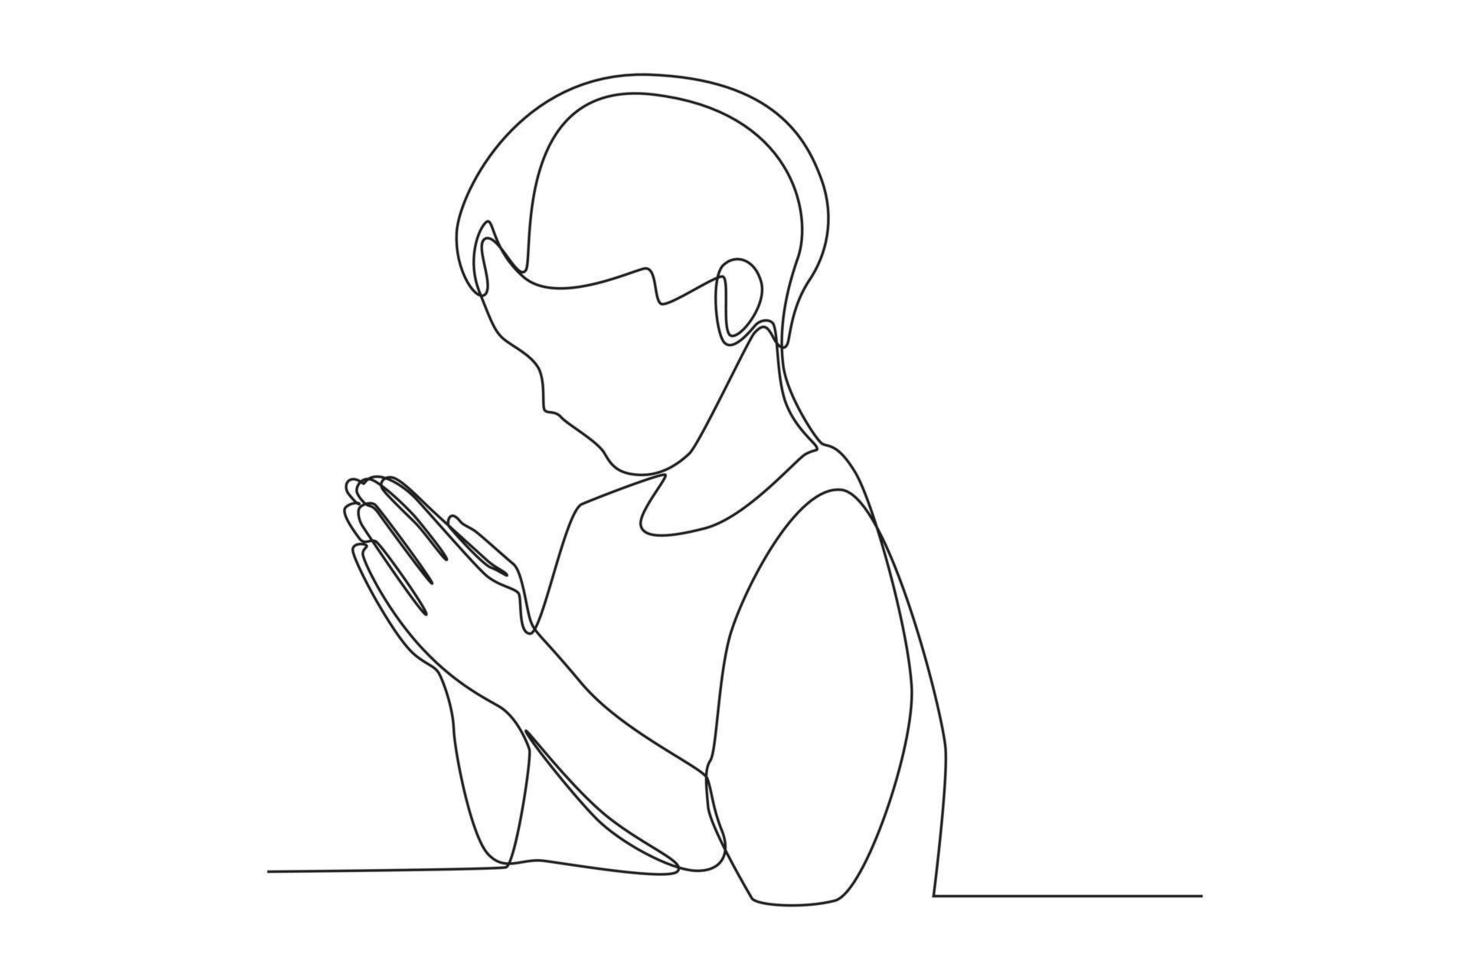 dibujo continuo de una línea niño rezando por la paz mundial. concepto del día de la paz. ilustración gráfica vectorial de diseño de dibujo de una sola línea. vector